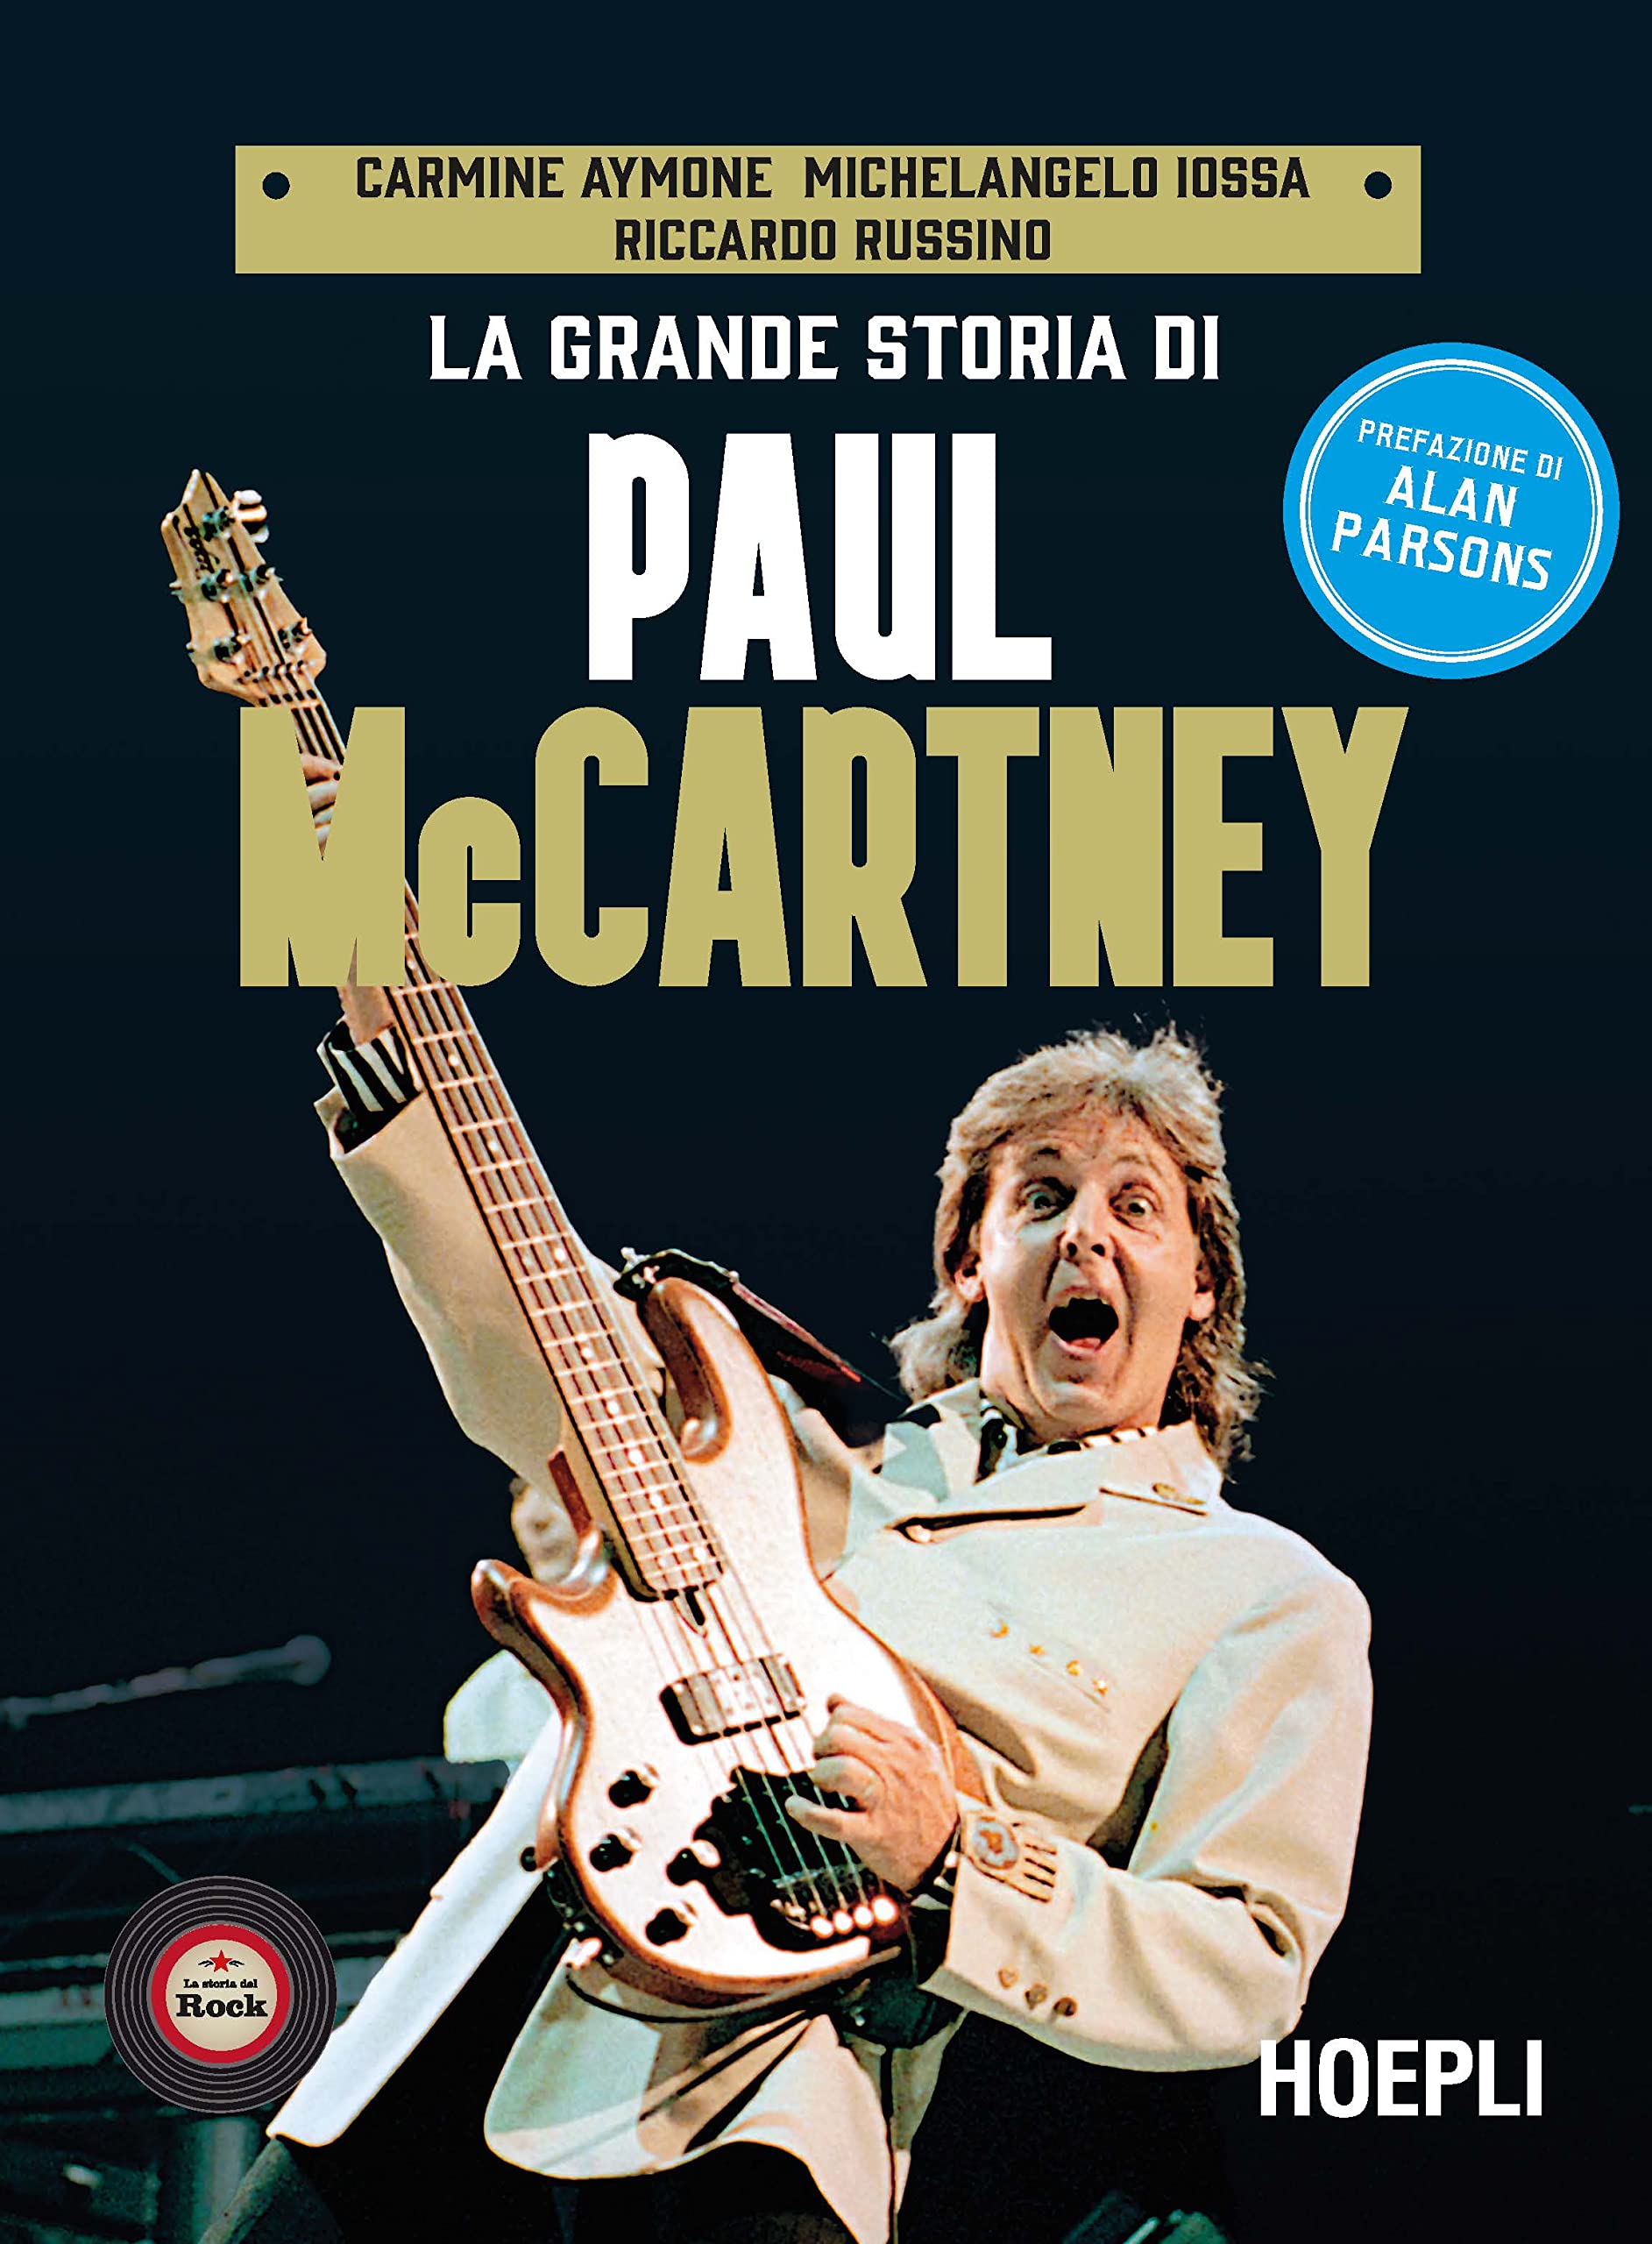 Il 14 al Maschio Angioino di Napoli presentazione del volume “La grande storia di Paul McCartney”